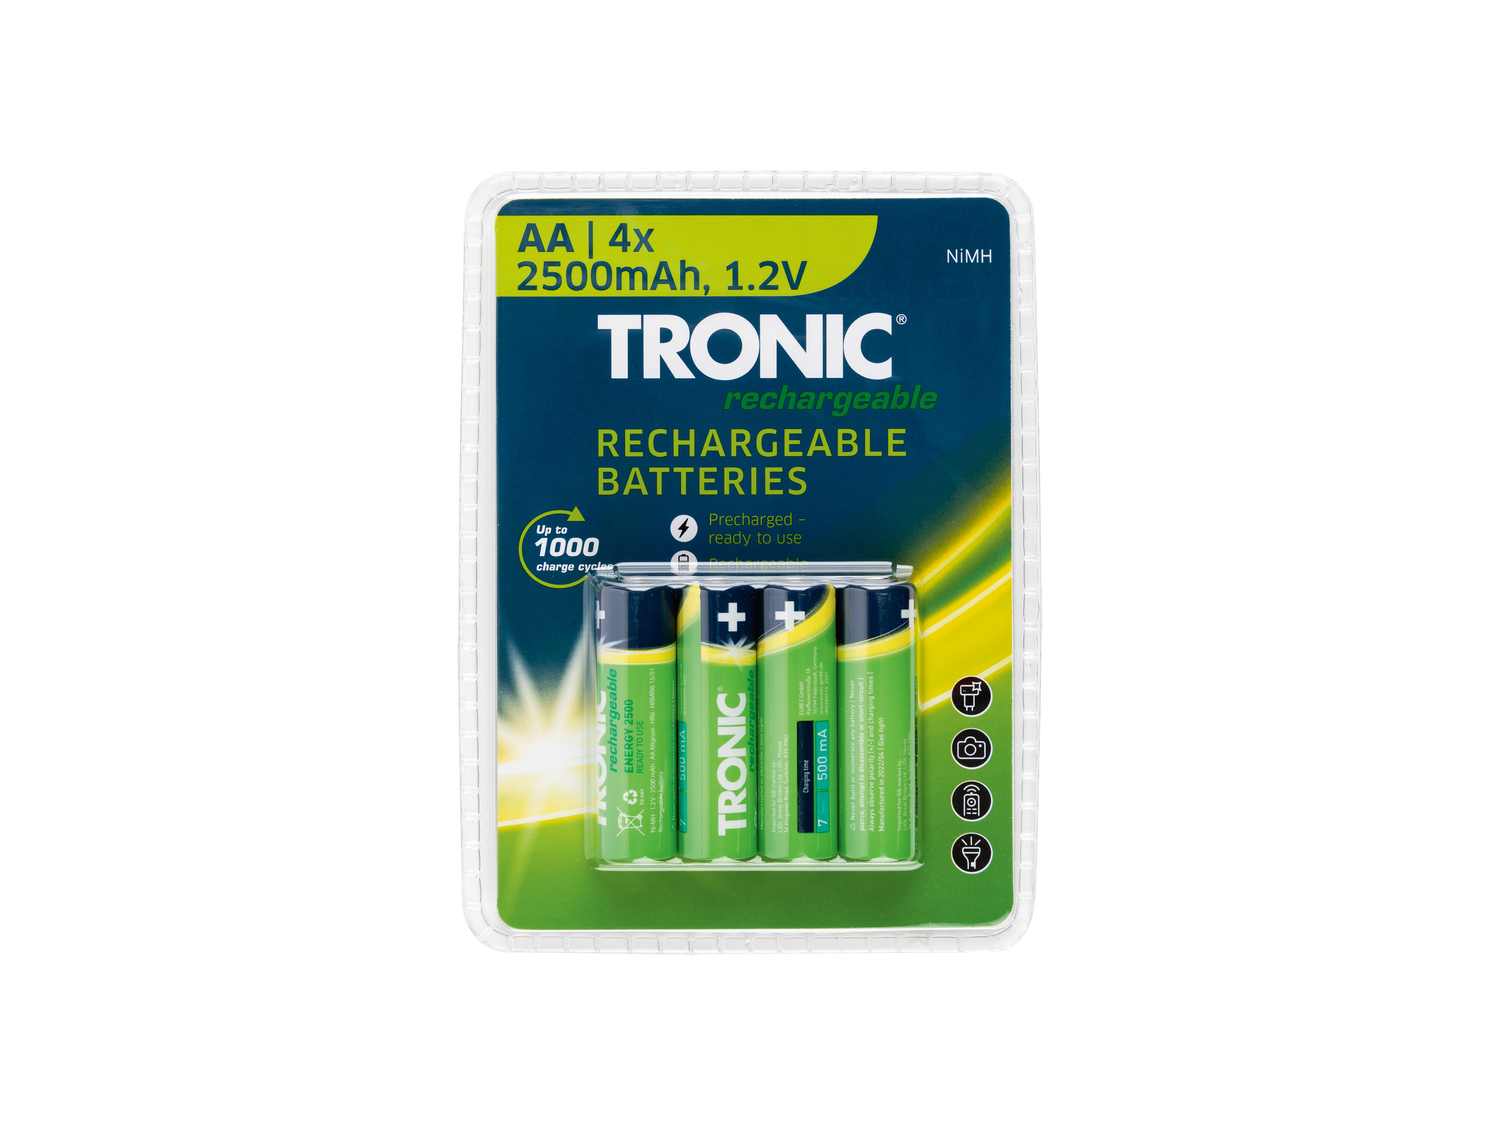 Batterie ricaricabili Tronic, prezzo 3.99 &#8364; 
4 pezzi 
- AA o AAA
Caratteristiche
 ...